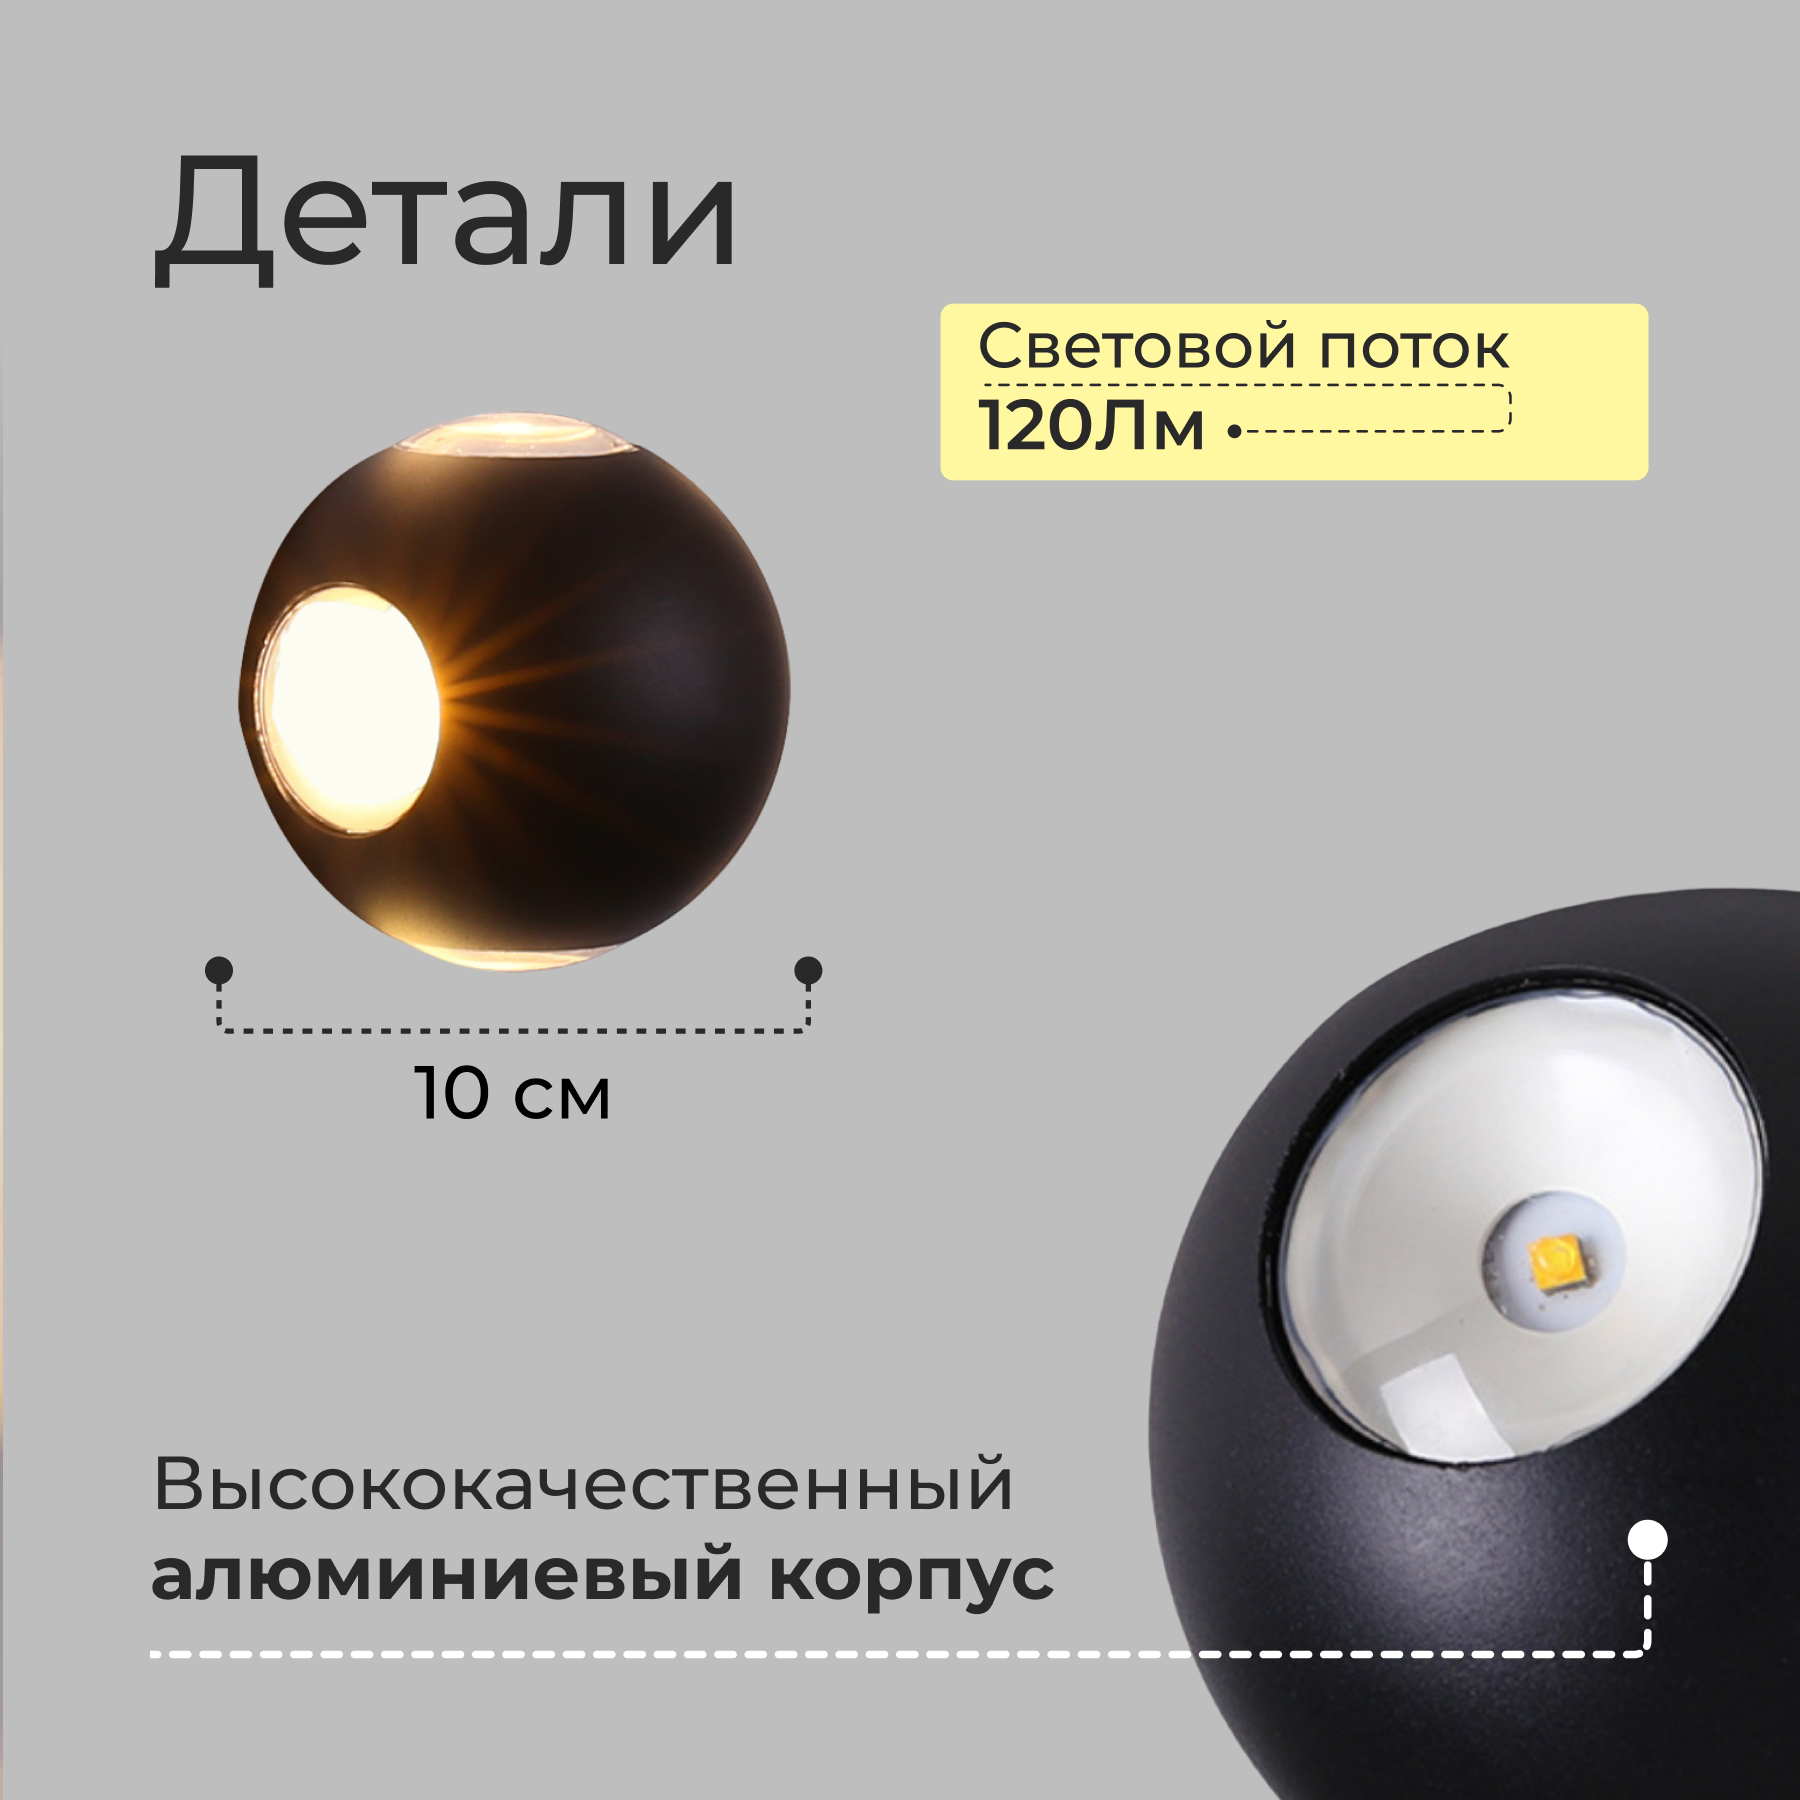 ремонты-бмв.рф - люстры и светильники для Вашего дома